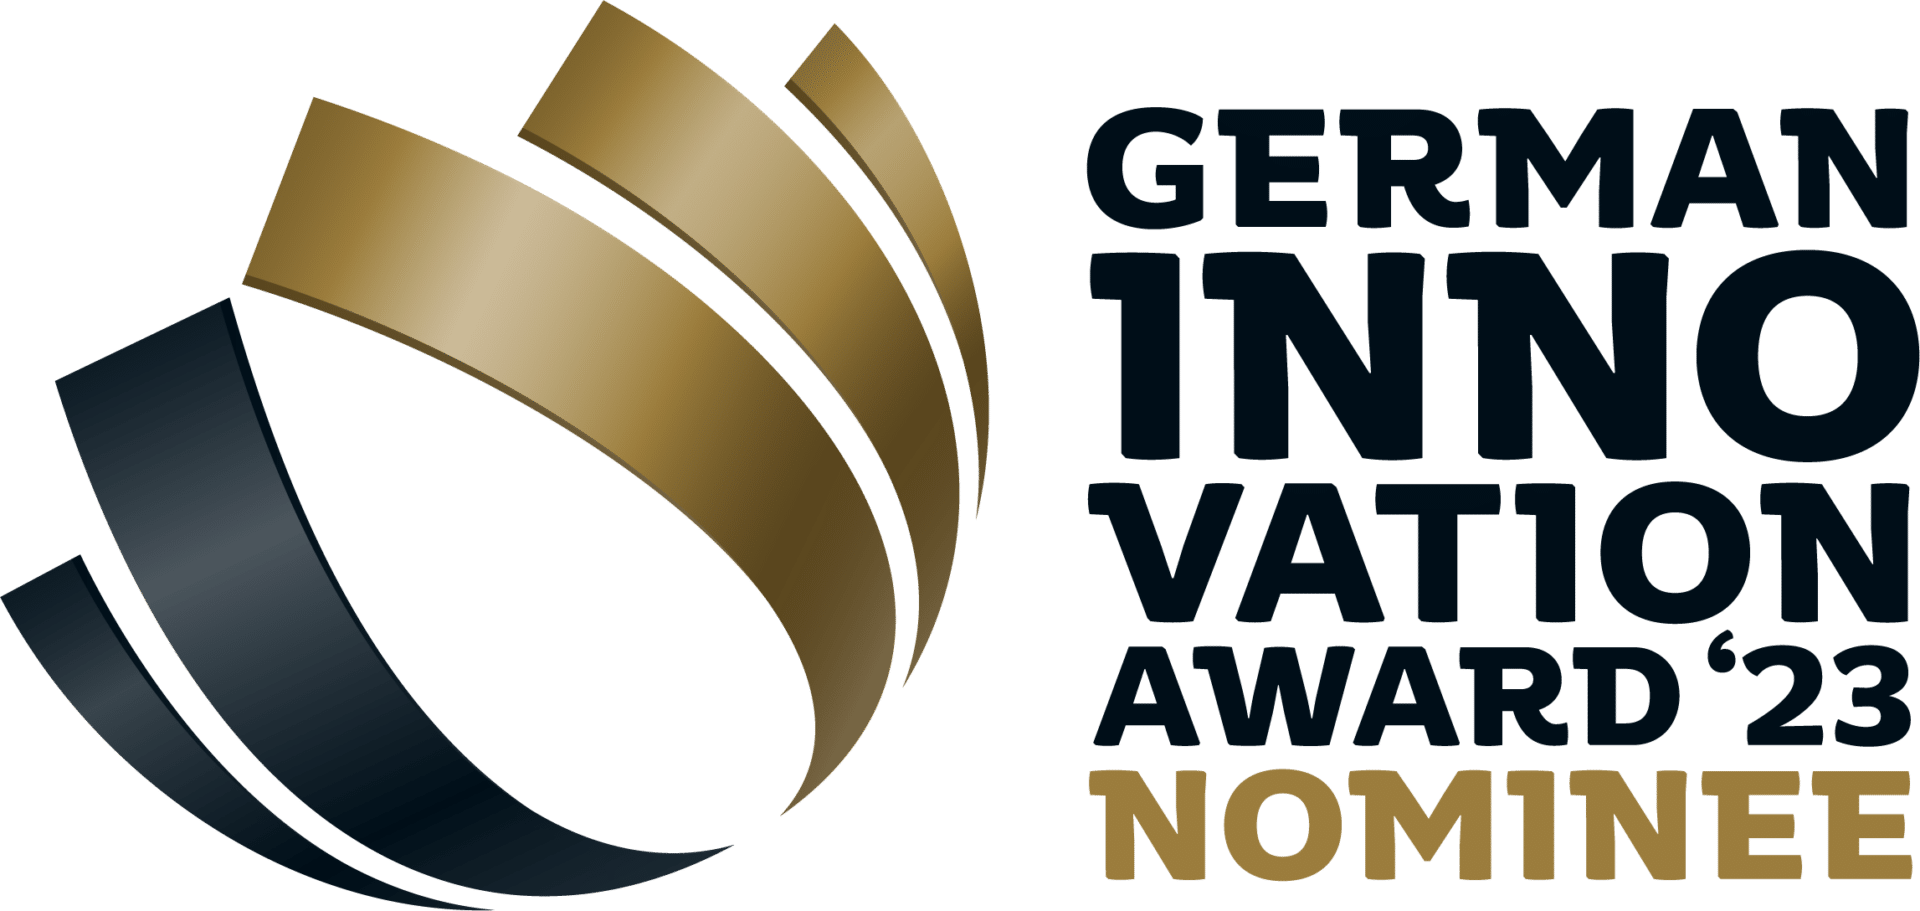 Logo des German Innovation Award 2023 Nominee